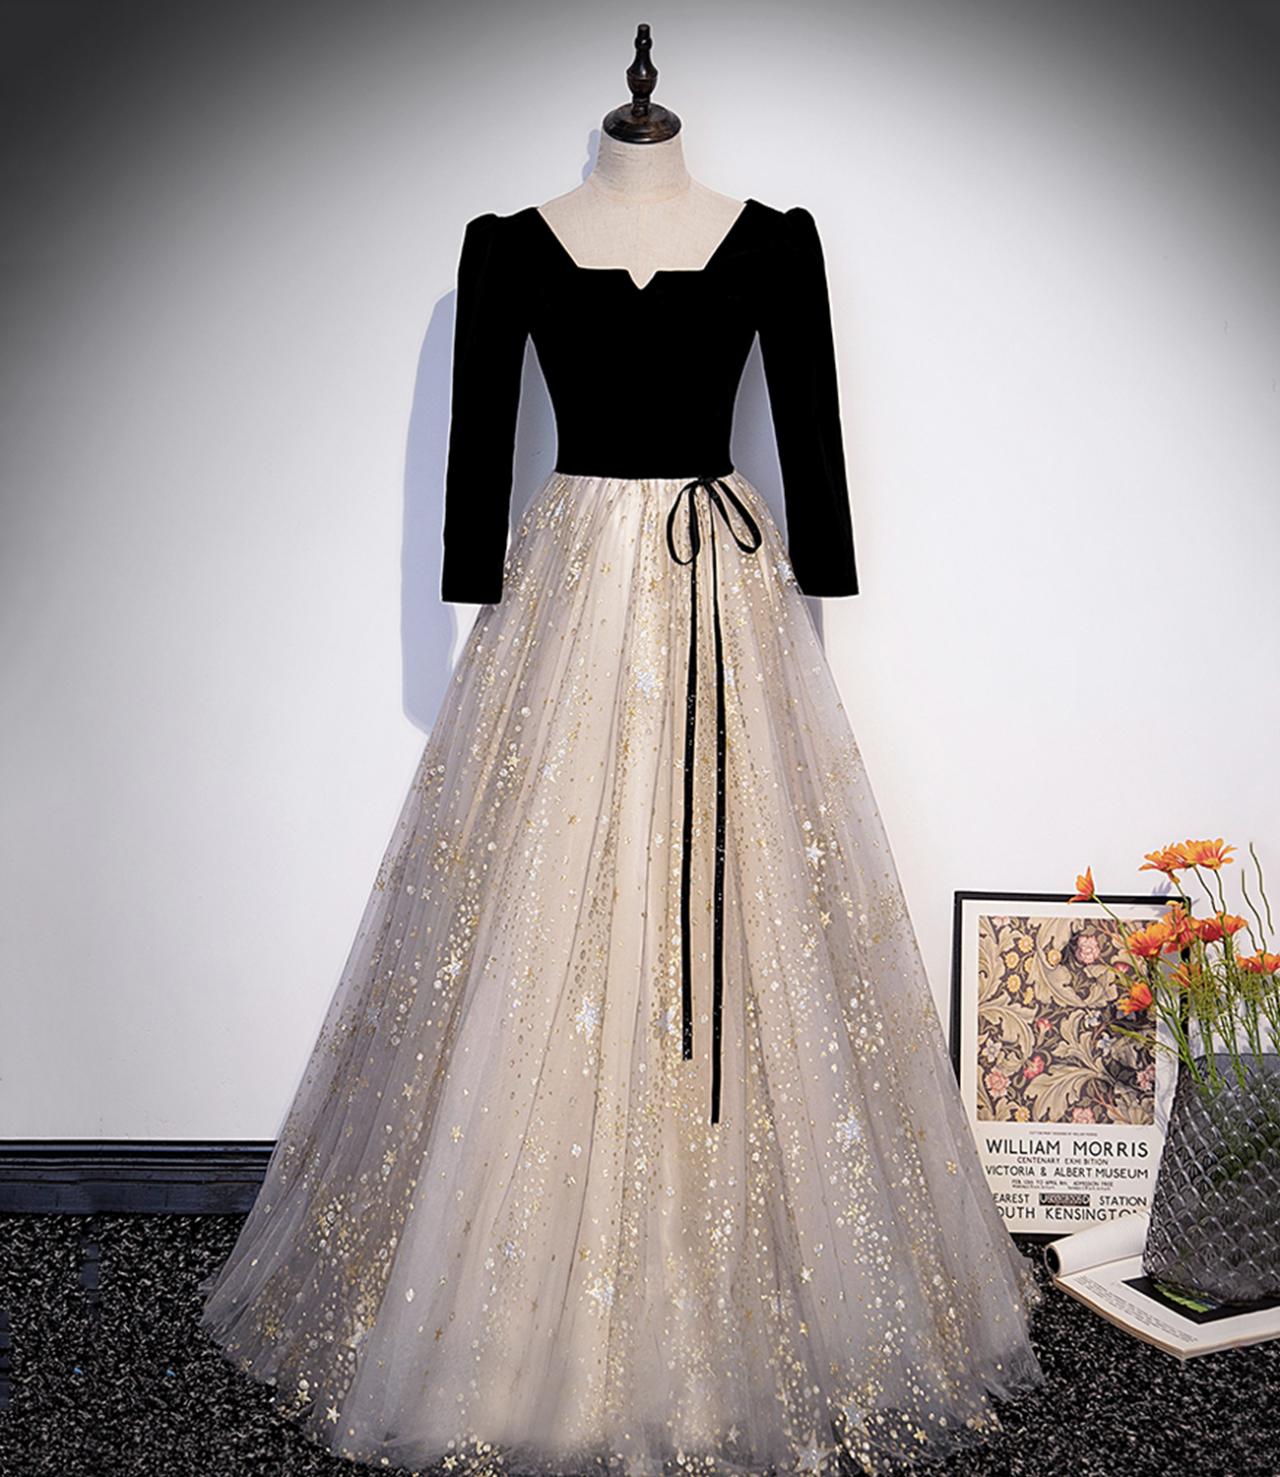 Black Velvet Tulle Long Prom Dress Black Evening Dress